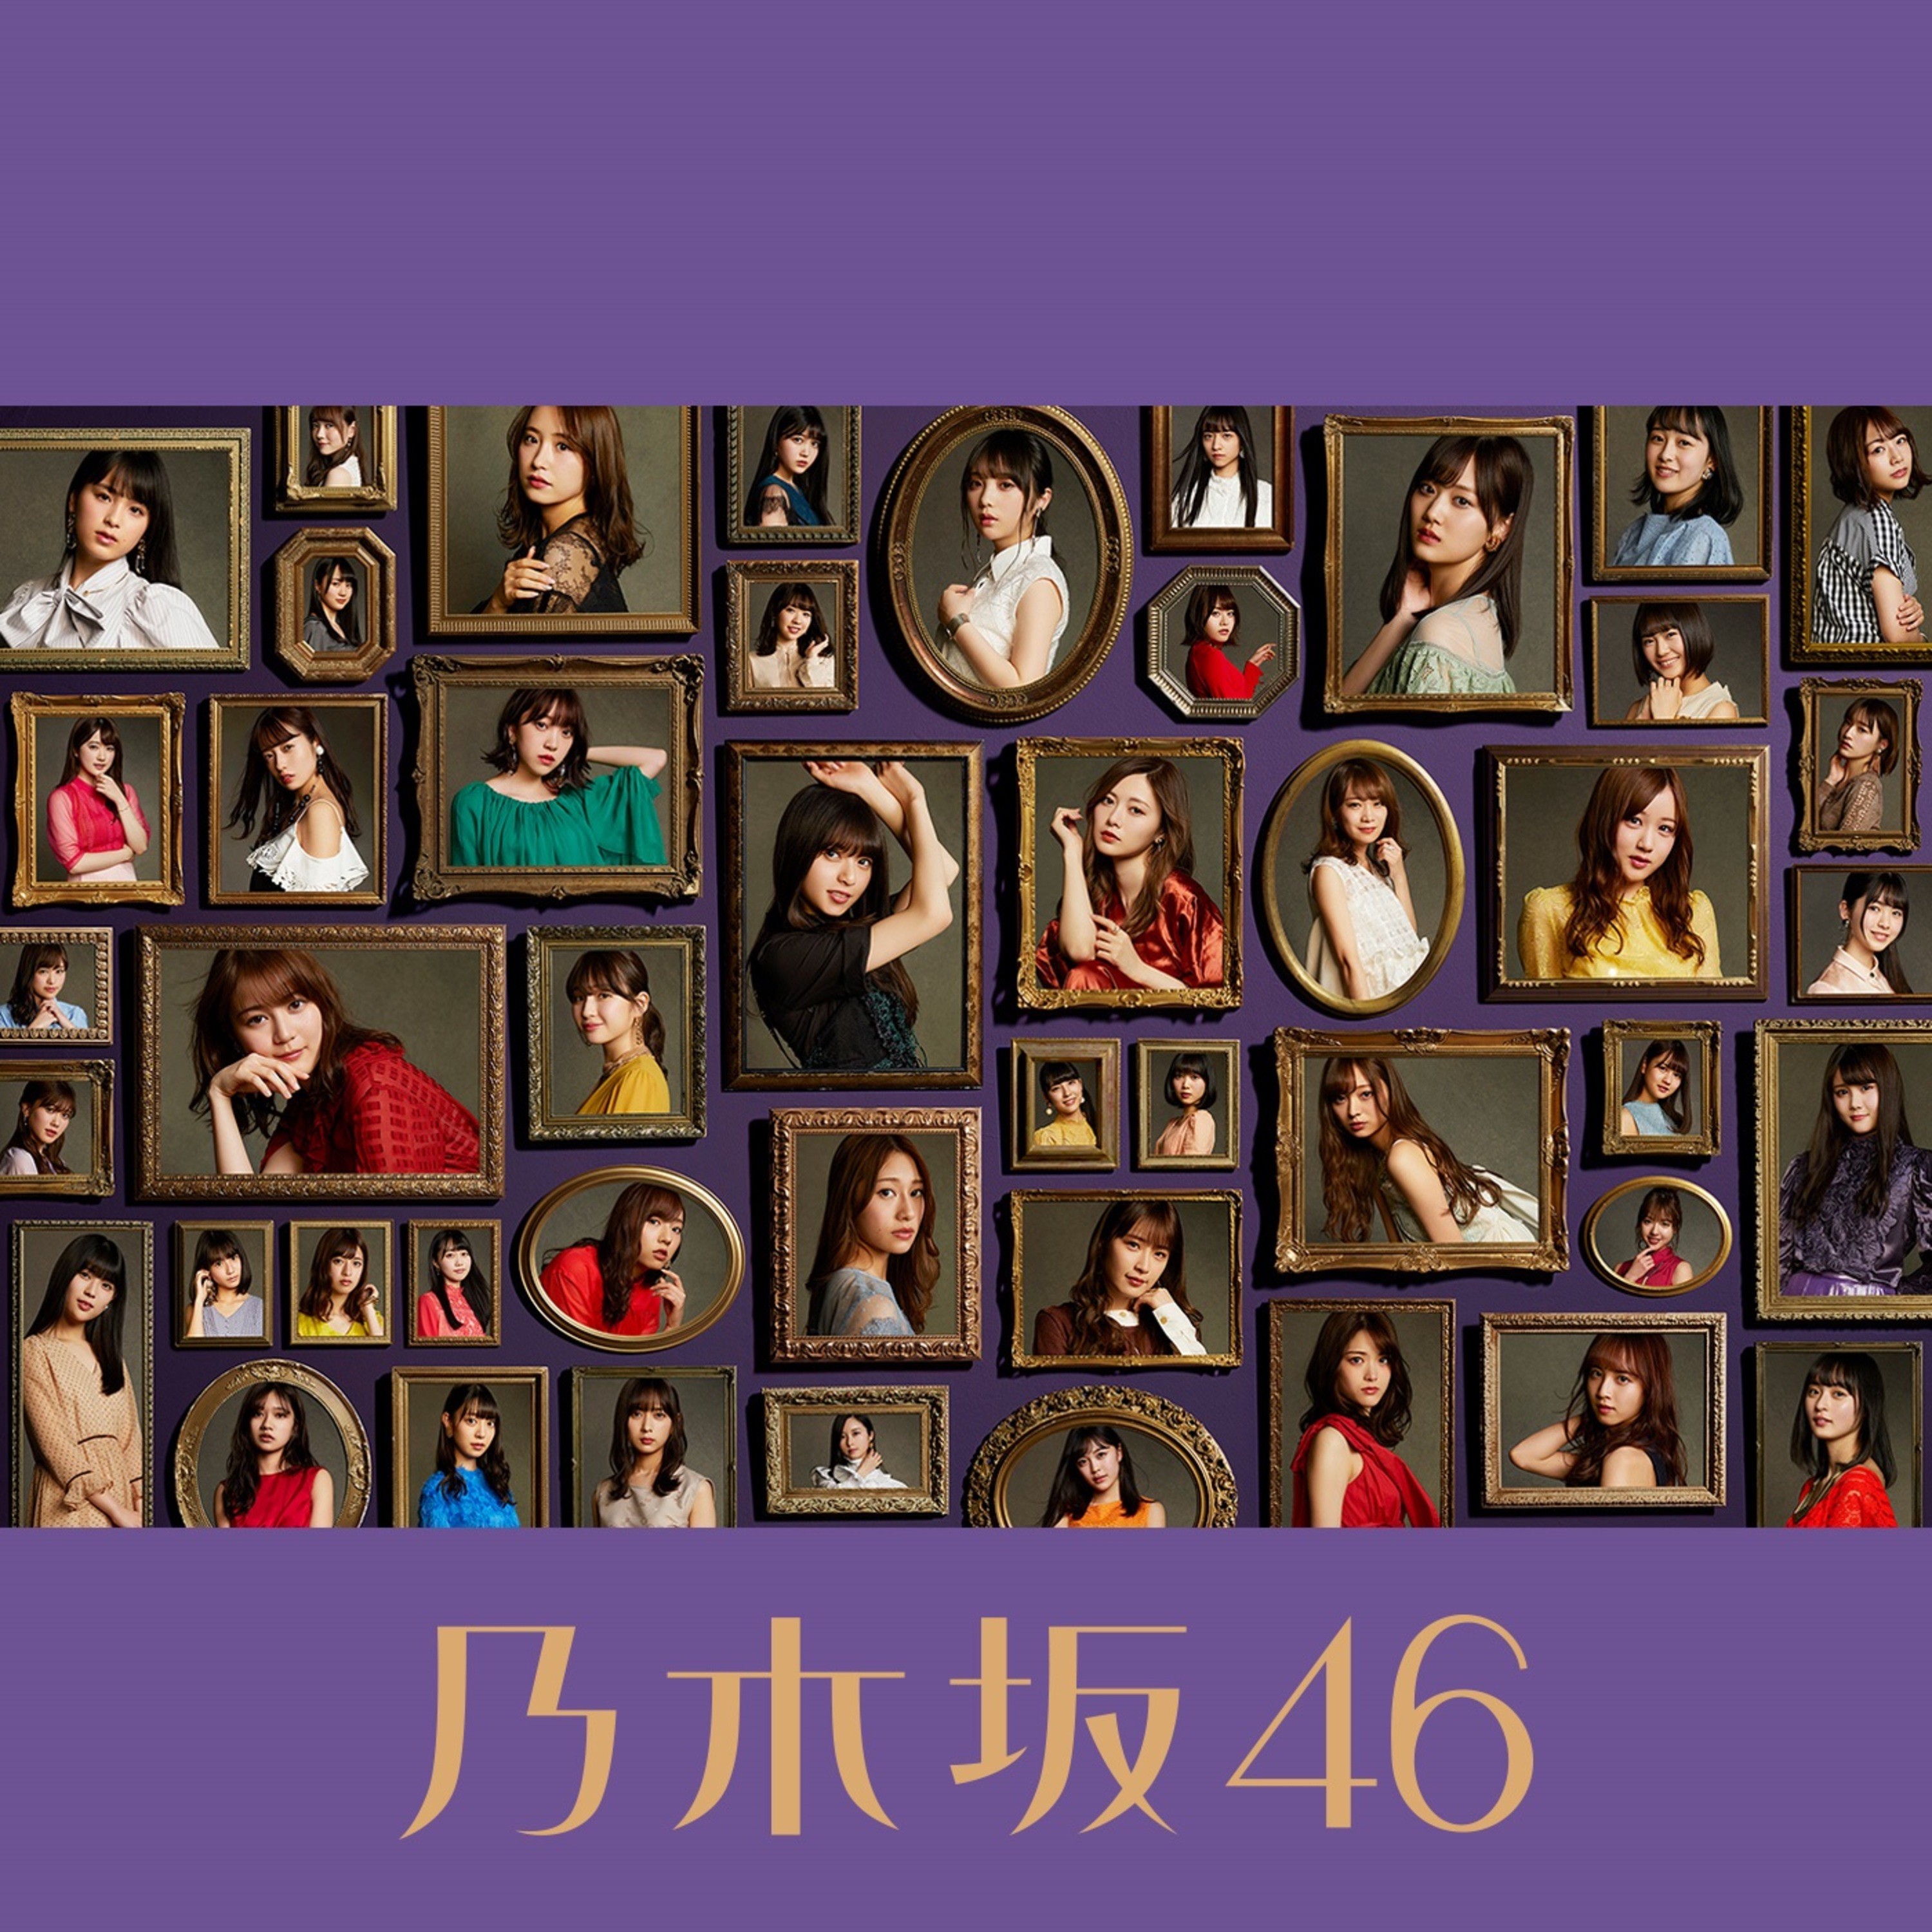 乃木坂46 (Nogizaka46) - 今が思い出になるまで (Complete Edition) [FLAC 24bit/96kHz + Blu-Ray ISO]